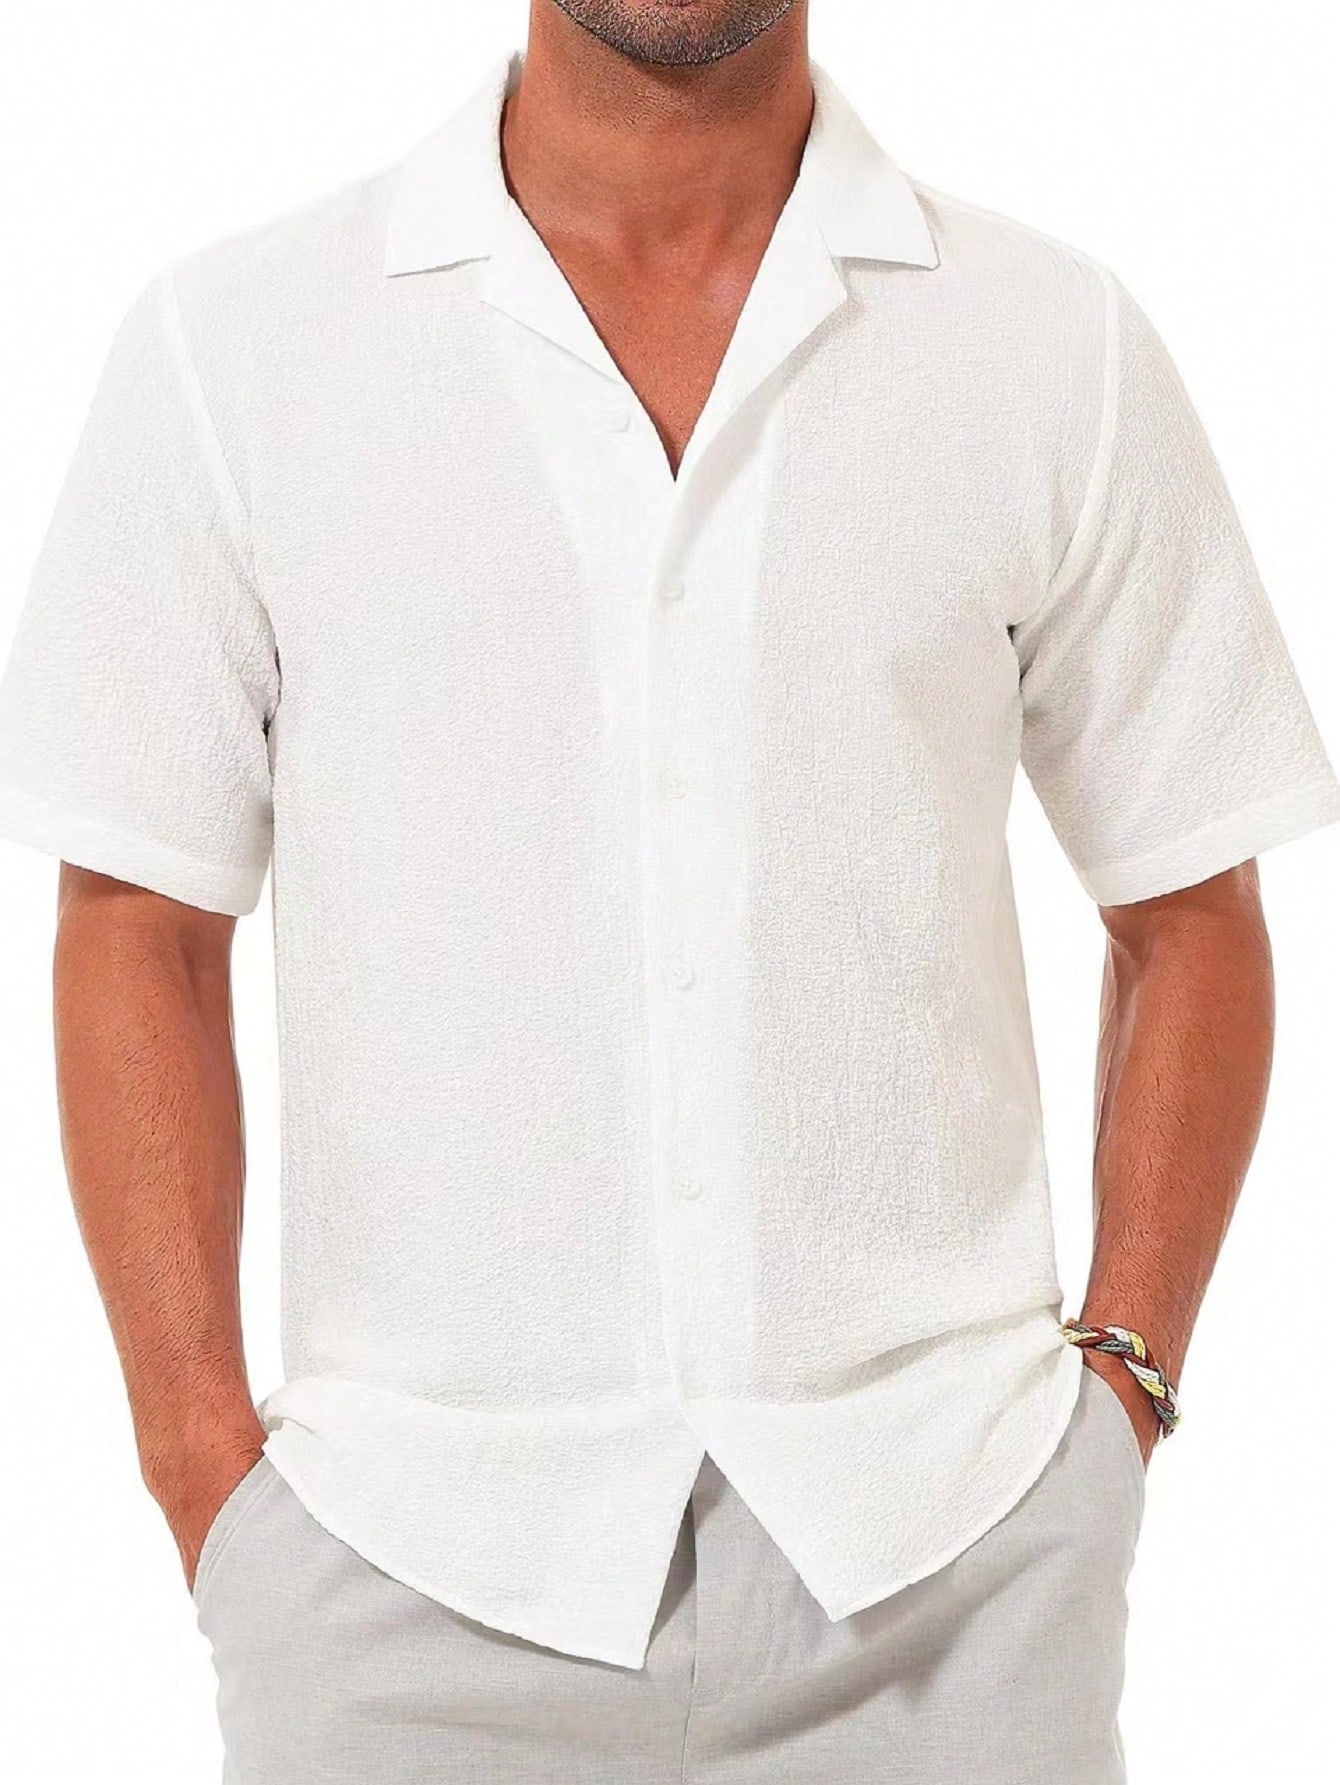 Мужская повседневная рубашка с коротким рукавом на пуговицах, белый рубашка мужская на пуговицах повседневная блуза с коротким рукавом свободного покроя модная сорочка на лето